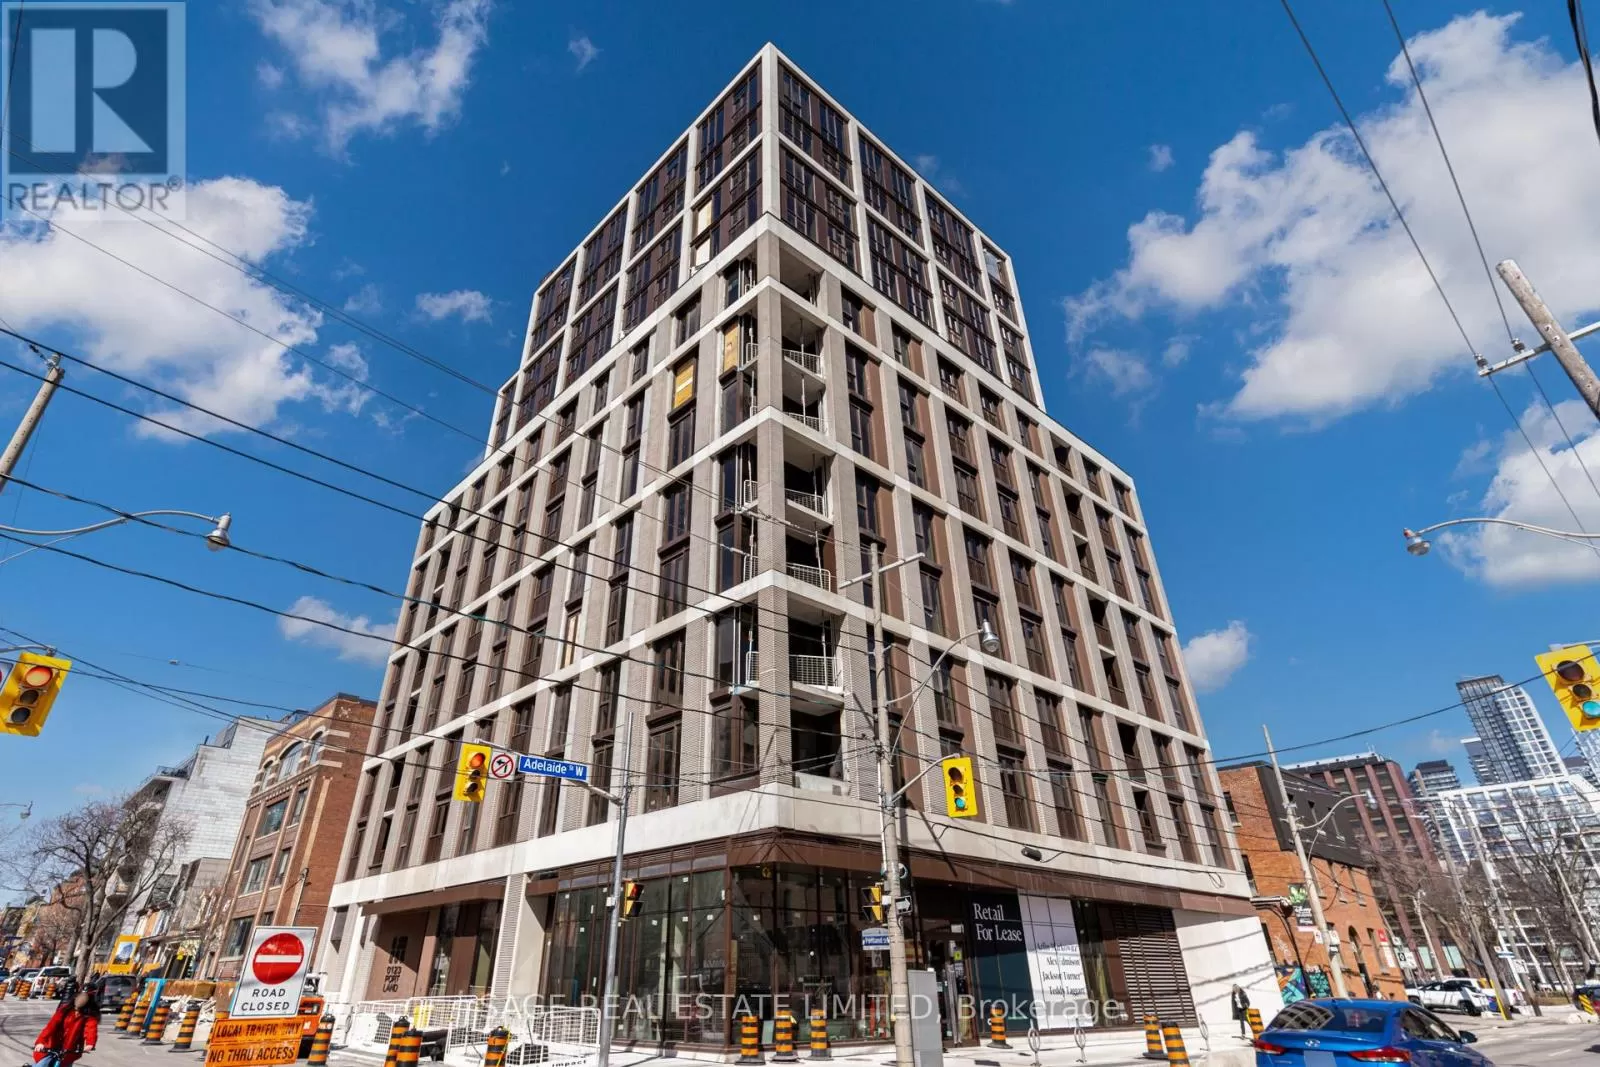 Apartment for rent: 205 - 123 Portland Street, Toronto, Ontario M5V 0V9